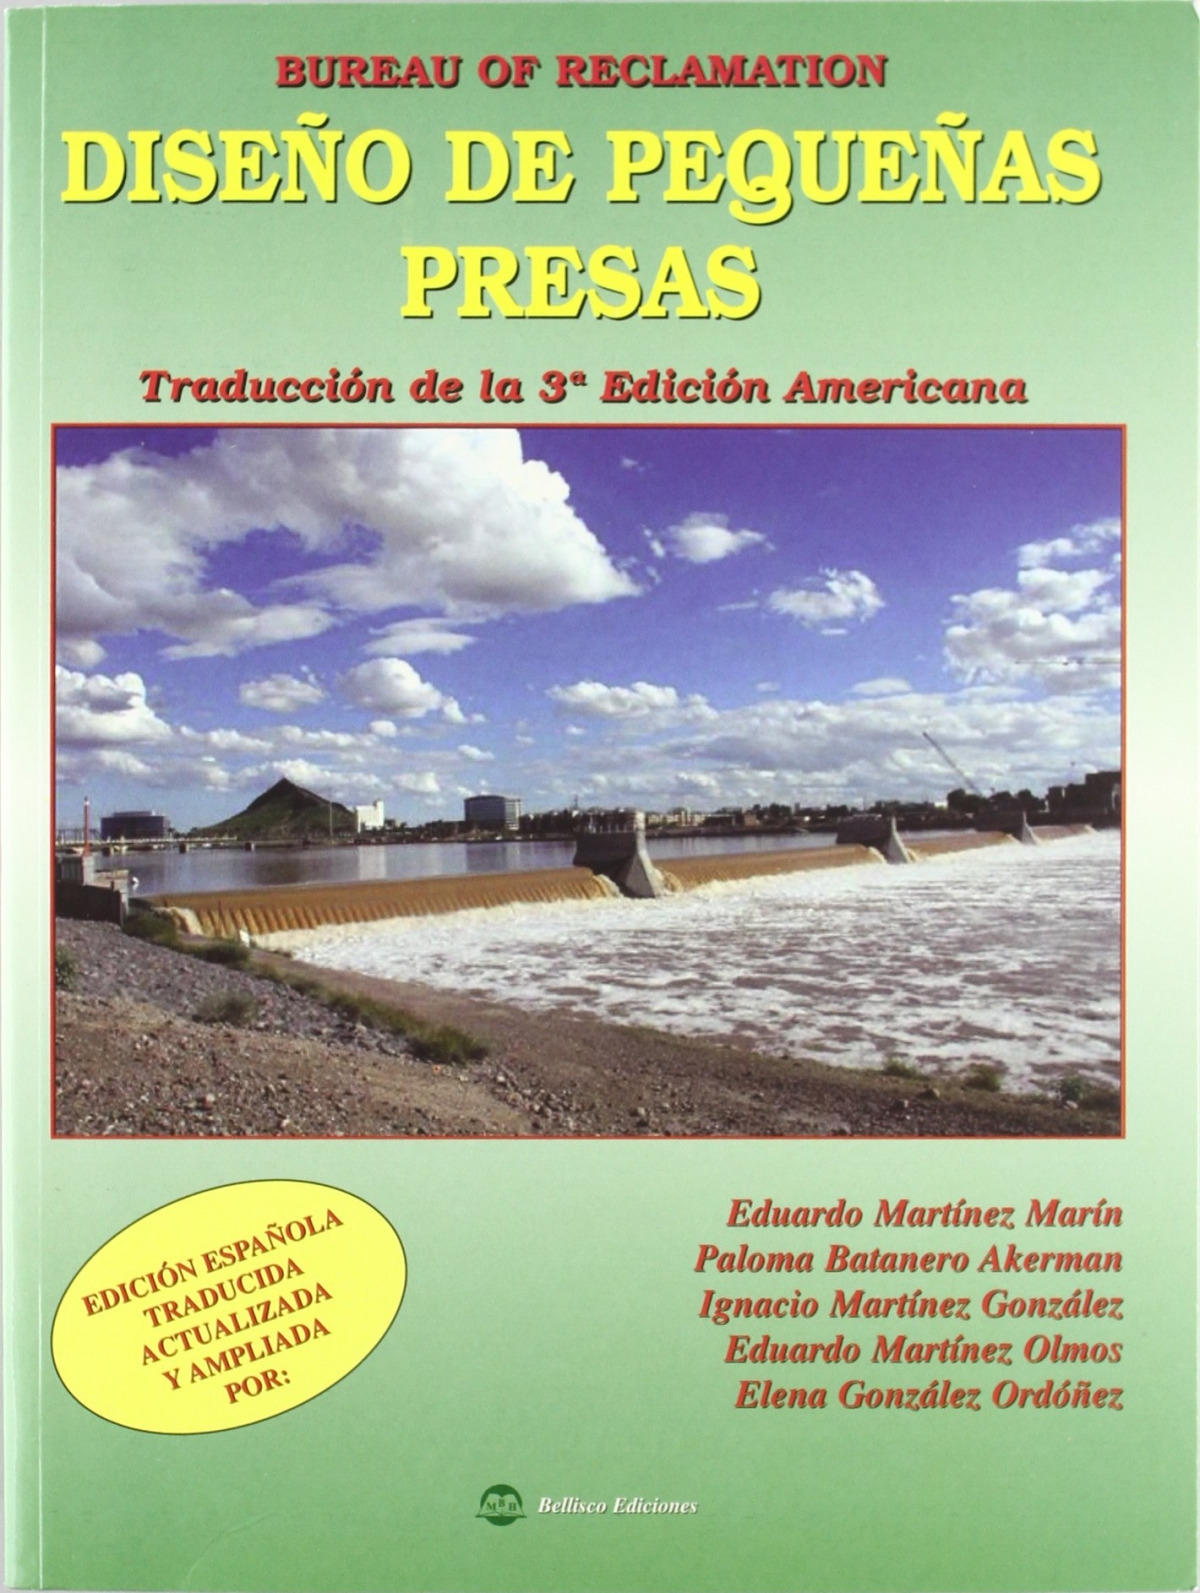 DiseÑo de pequeÑas presas traduccion de la 3ª edicion americana - Aa.Vv.